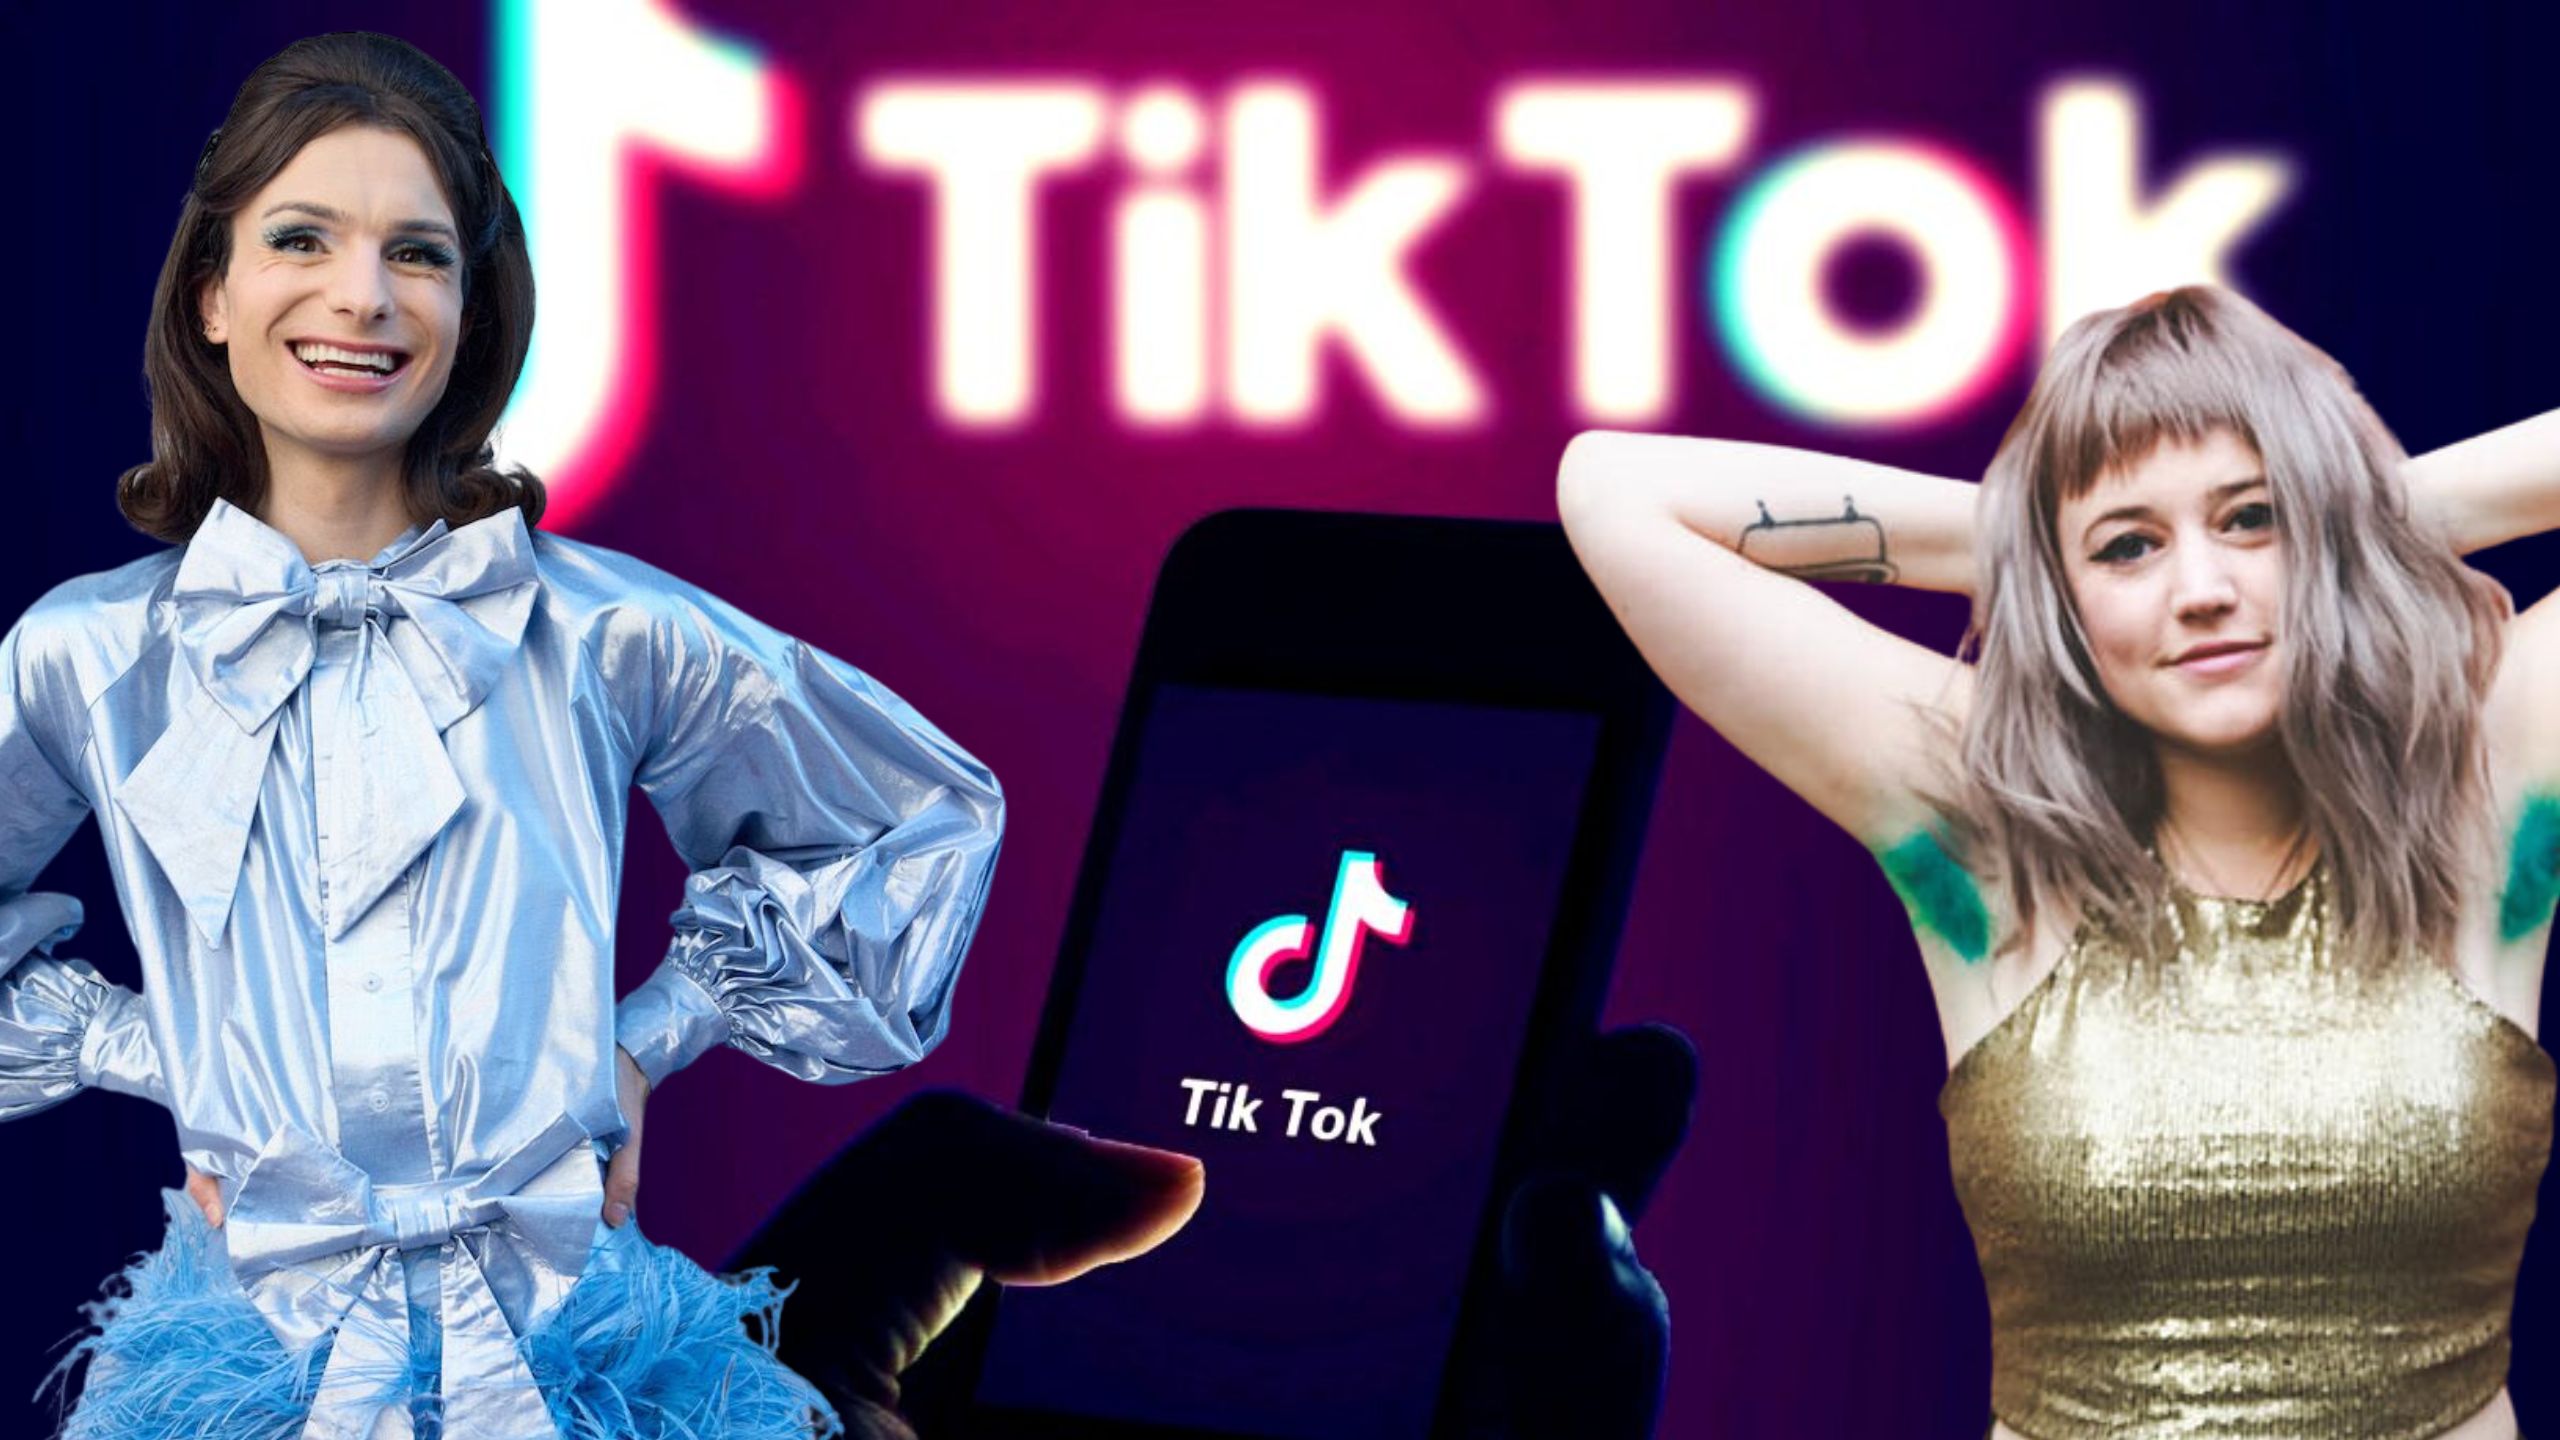 TikTok feminists failed in the transgender battle from the beginning.